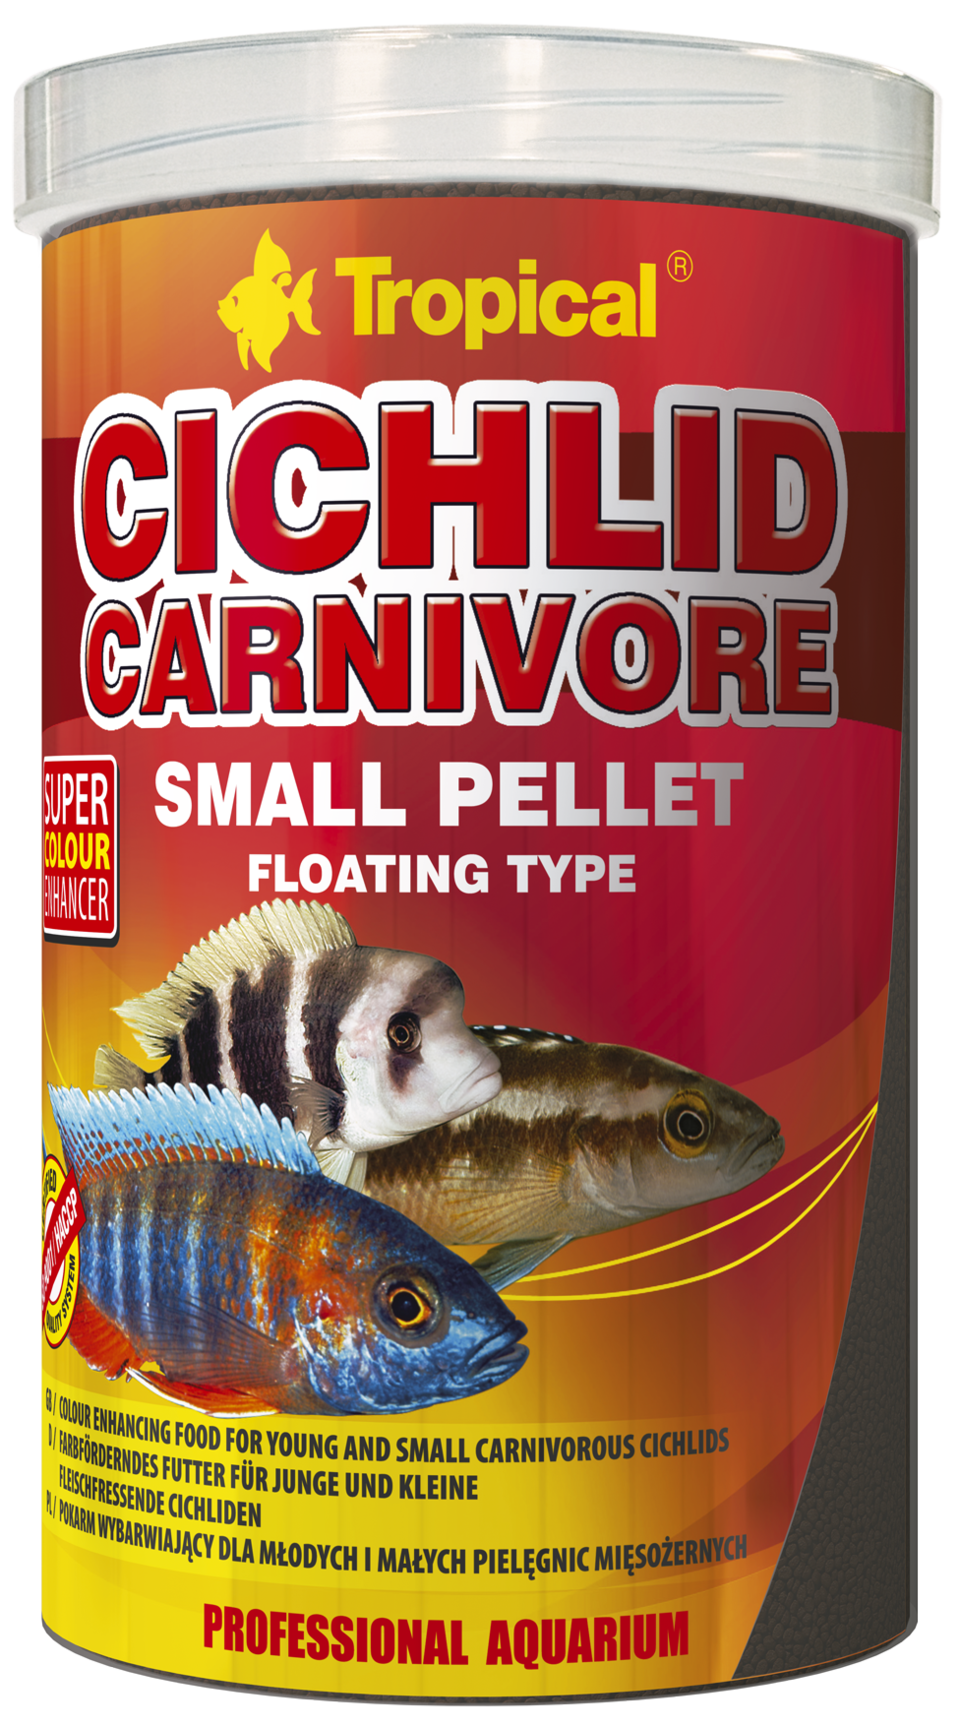 TROPICAL Cichlid Carnivore Small Pellet 5L nourriture pour cichlidés carnivores jeunes ou de petite taille